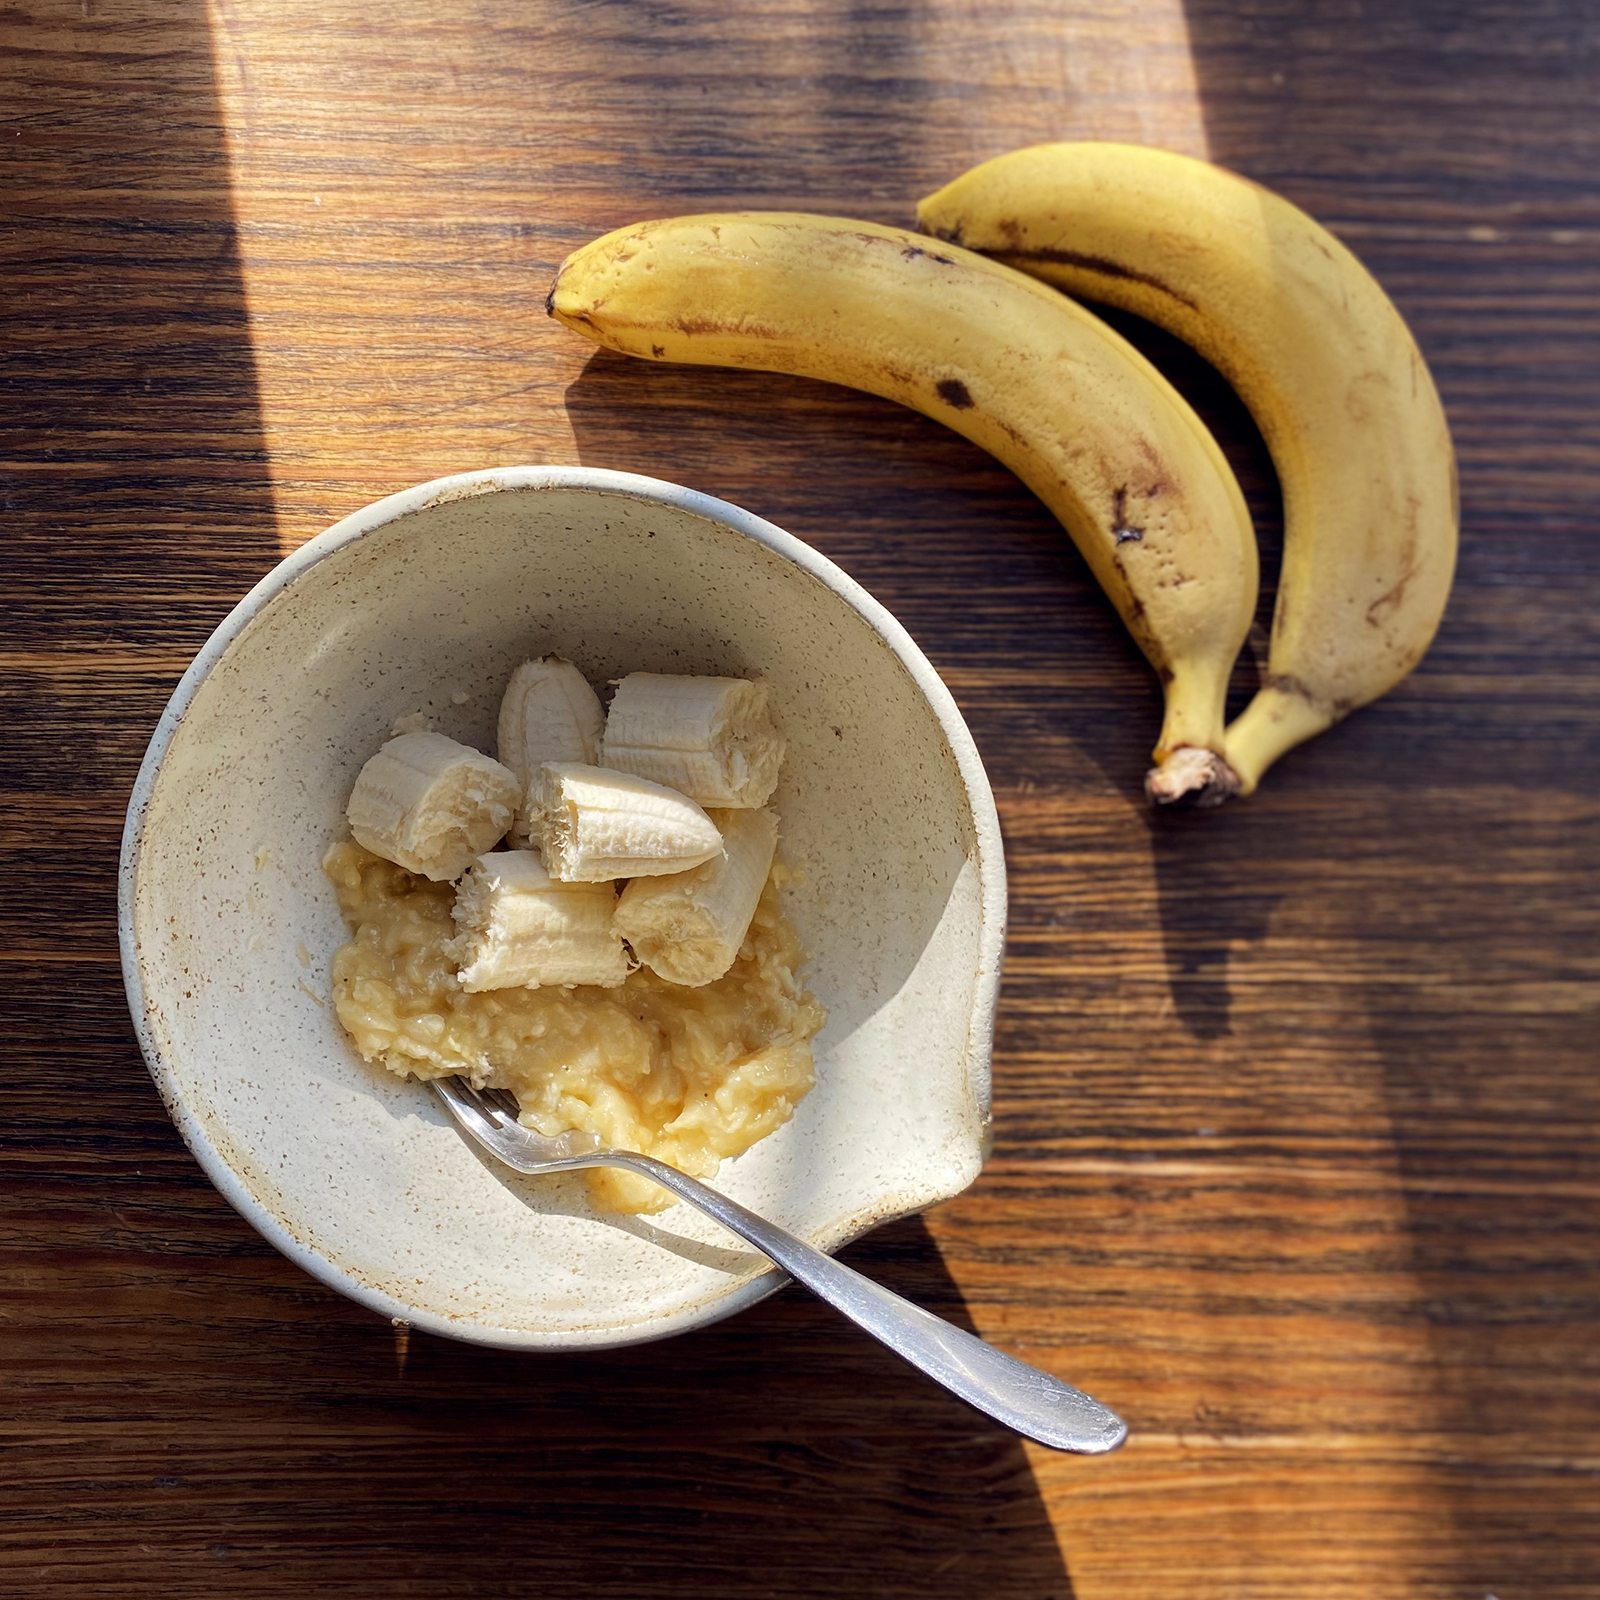 Более мягкие бананы используйте для теста, менее спелый оставьте для украшения